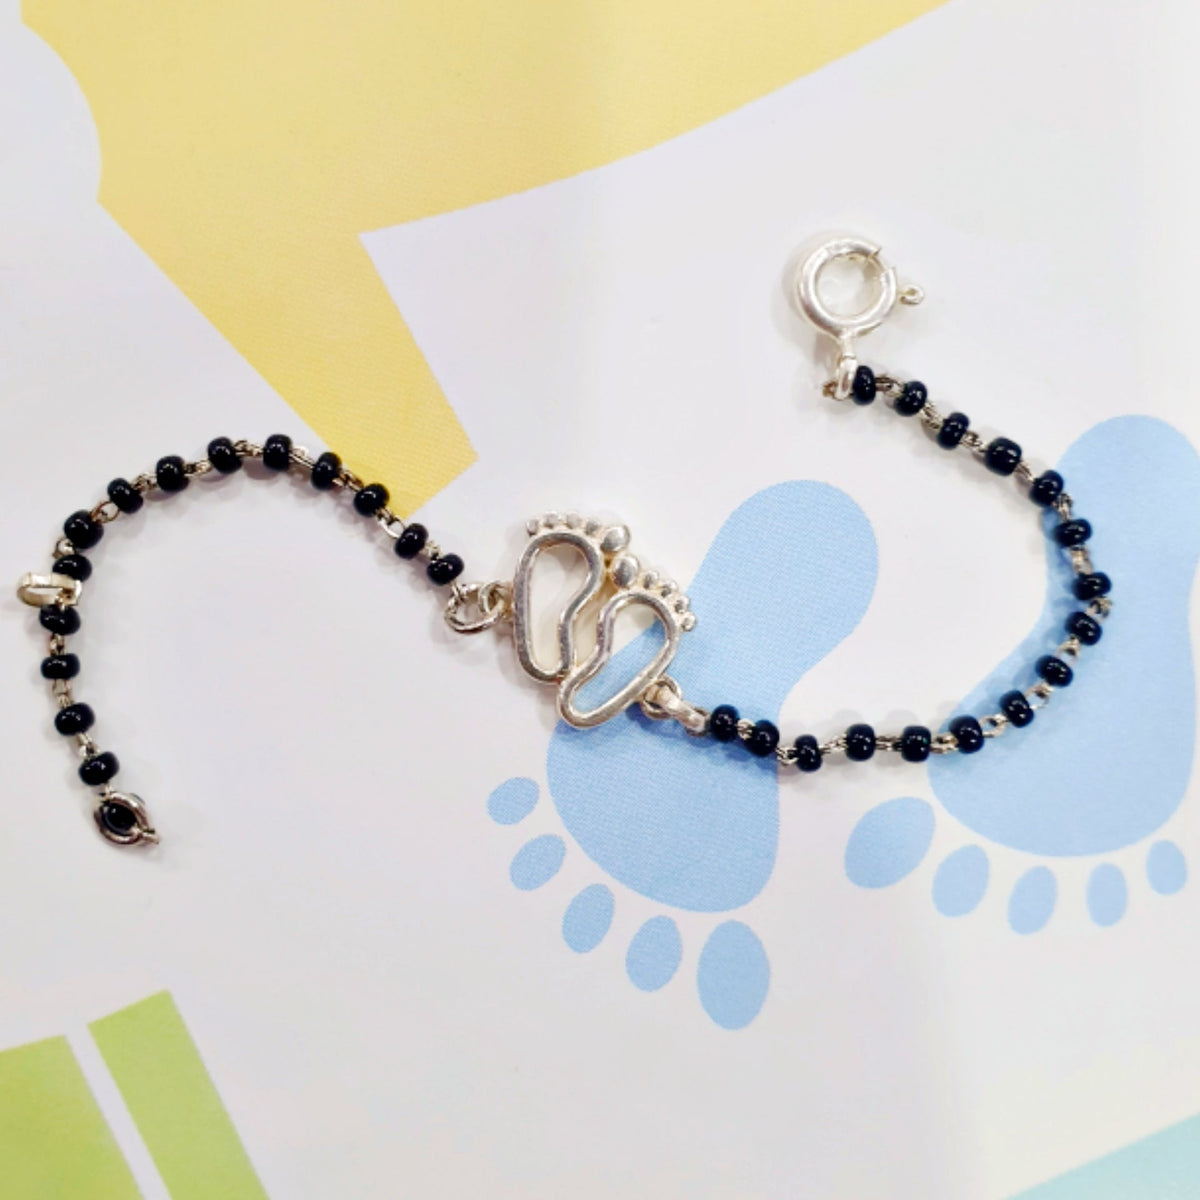 Customised Design Casting Bracelet/Anklet